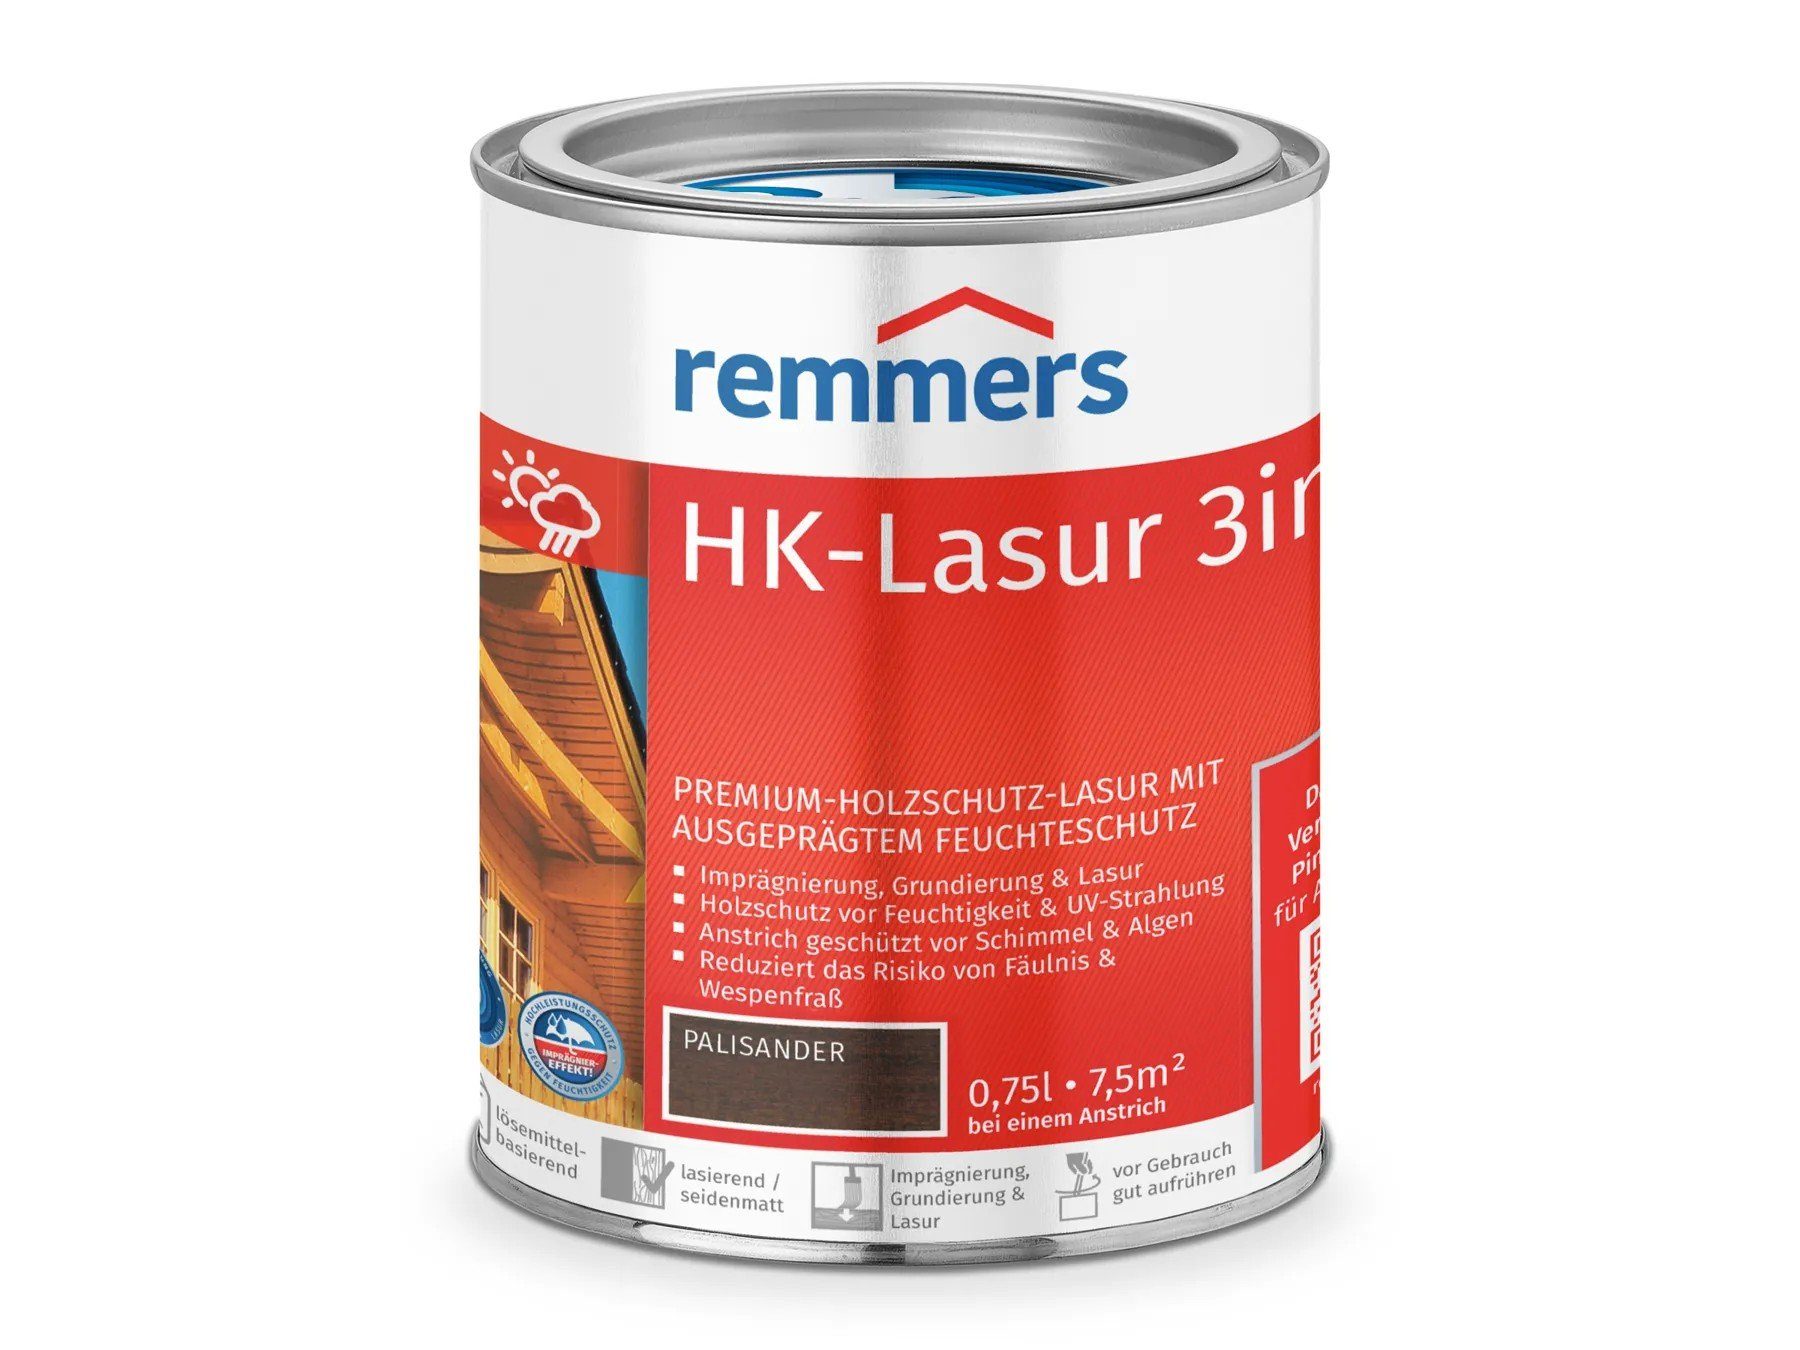 Remmers Holzschutzlasur HK-Lasur 3in1 palisander (RC-720)